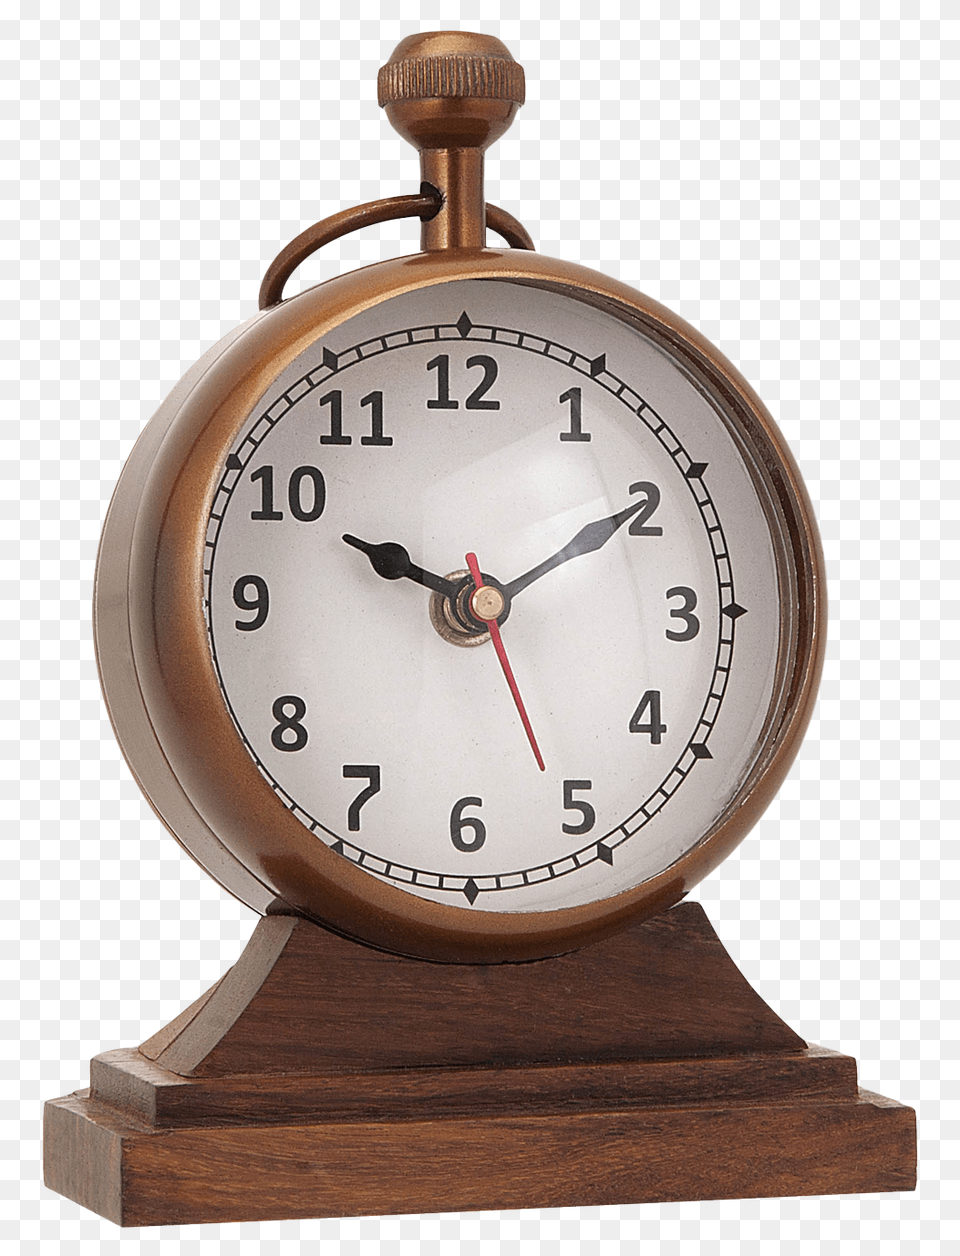 Wooden Alarm Clock, Alarm Clock, Analog Clock, Wristwatch Png